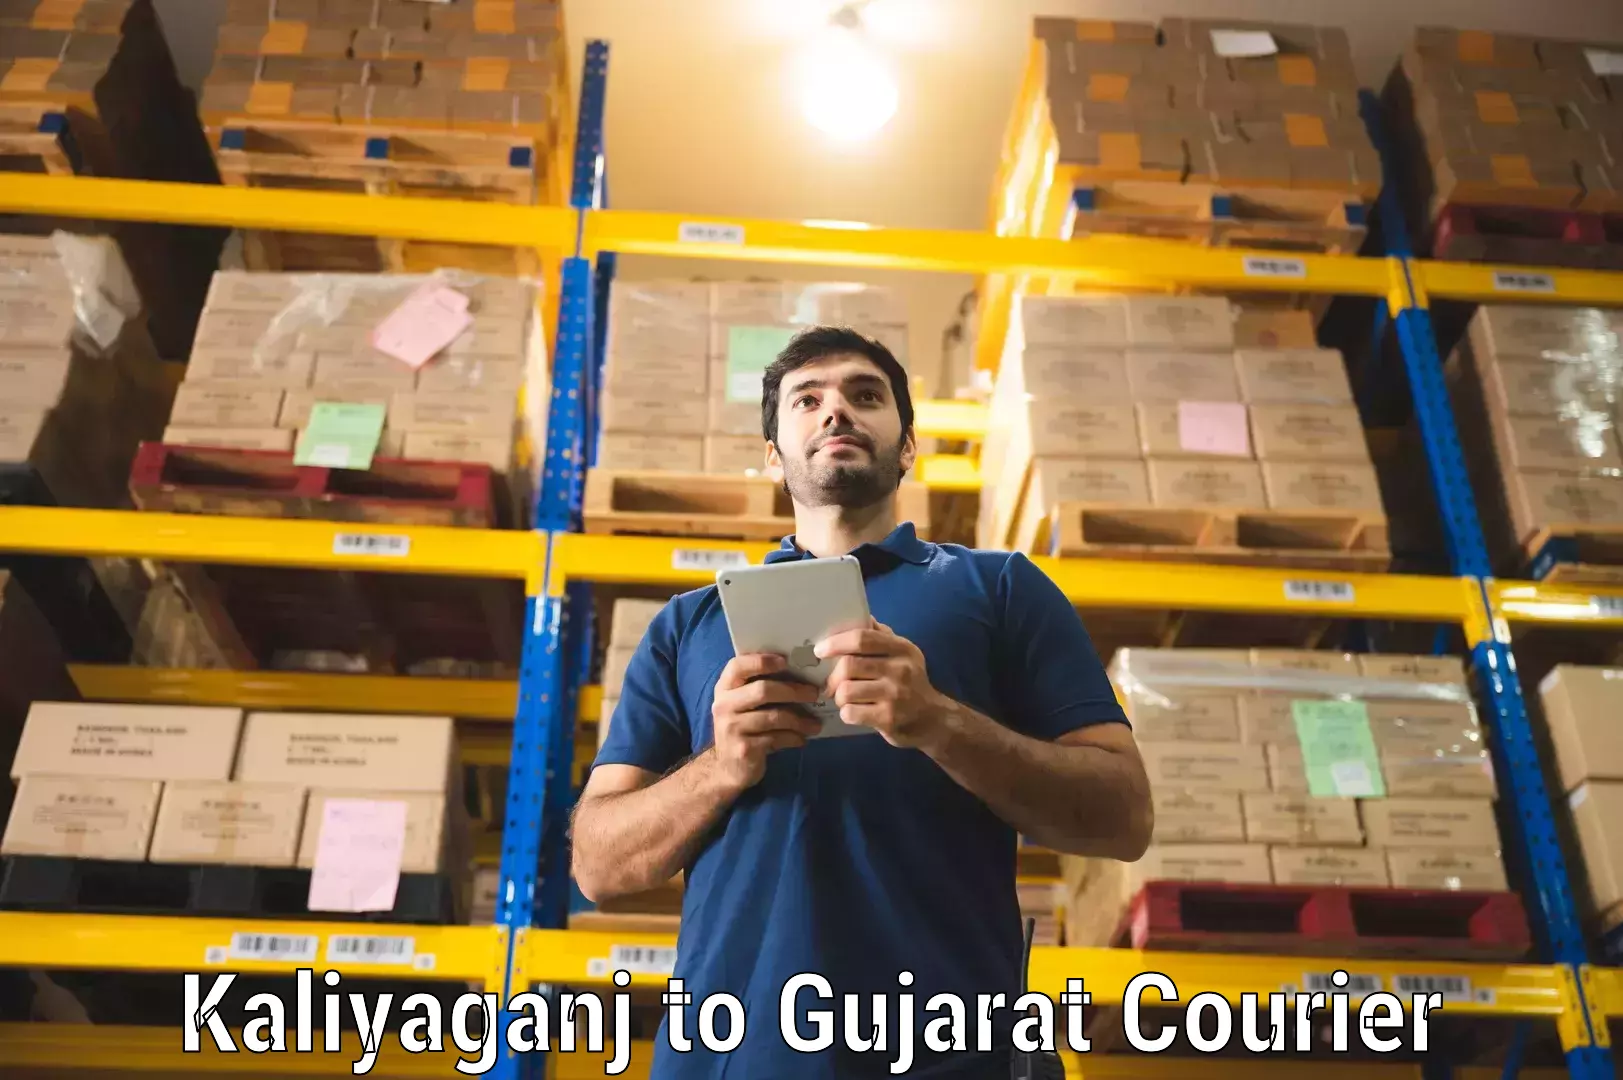 Next-day delivery options Kaliyaganj to Vyara